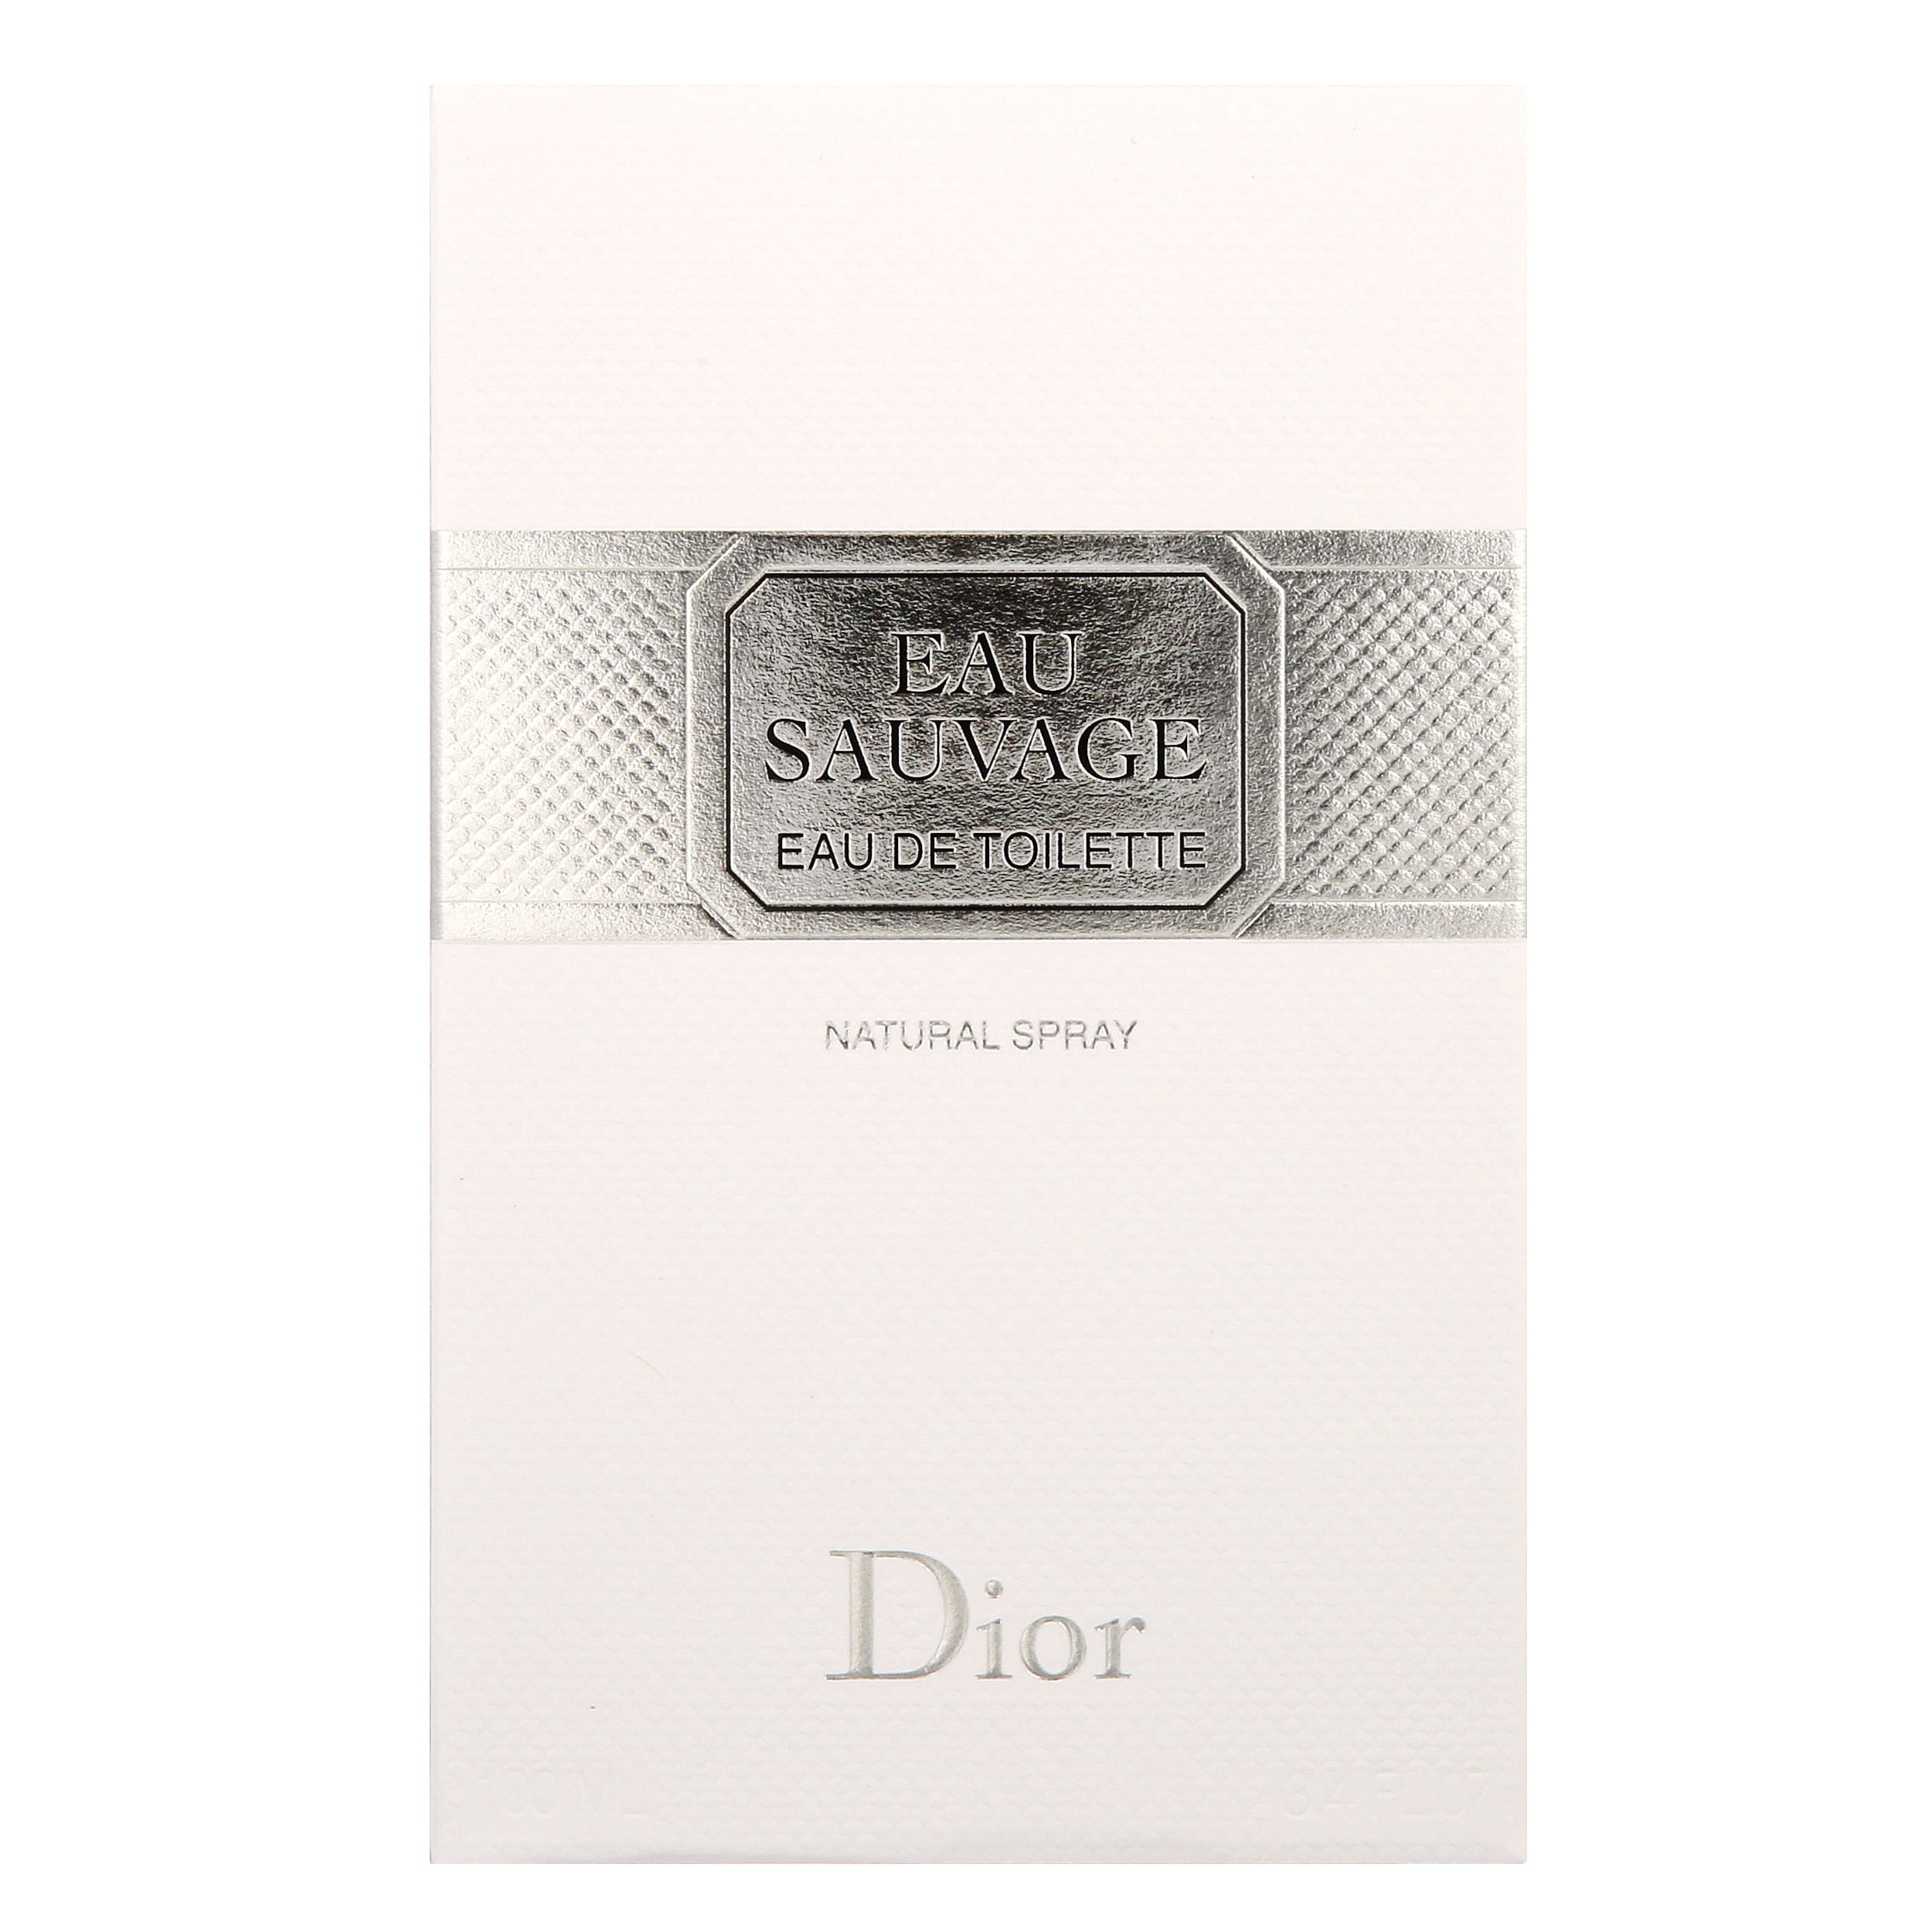 Dior Eau Sauvage Eau de Toilette, Cologne for Men, 3.4 Oz 